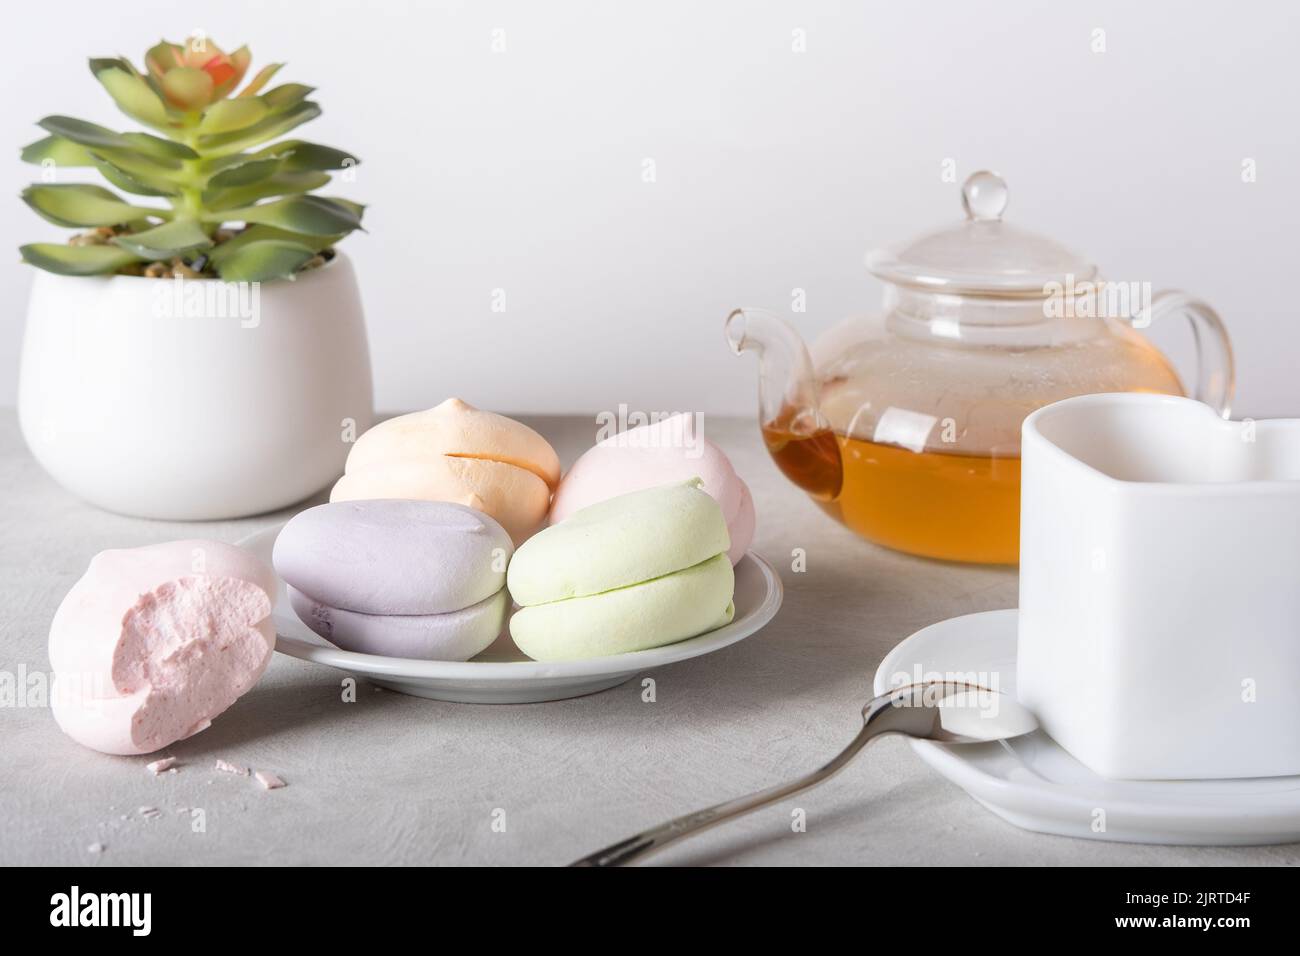 Teezeit. Eine gebissene Marschmalbe, eine Torte, eine Blume und transparente Gläser für eine Teezeremonie auf hellem Hintergrund. Teezeremonie. Frühstück. Stockfoto